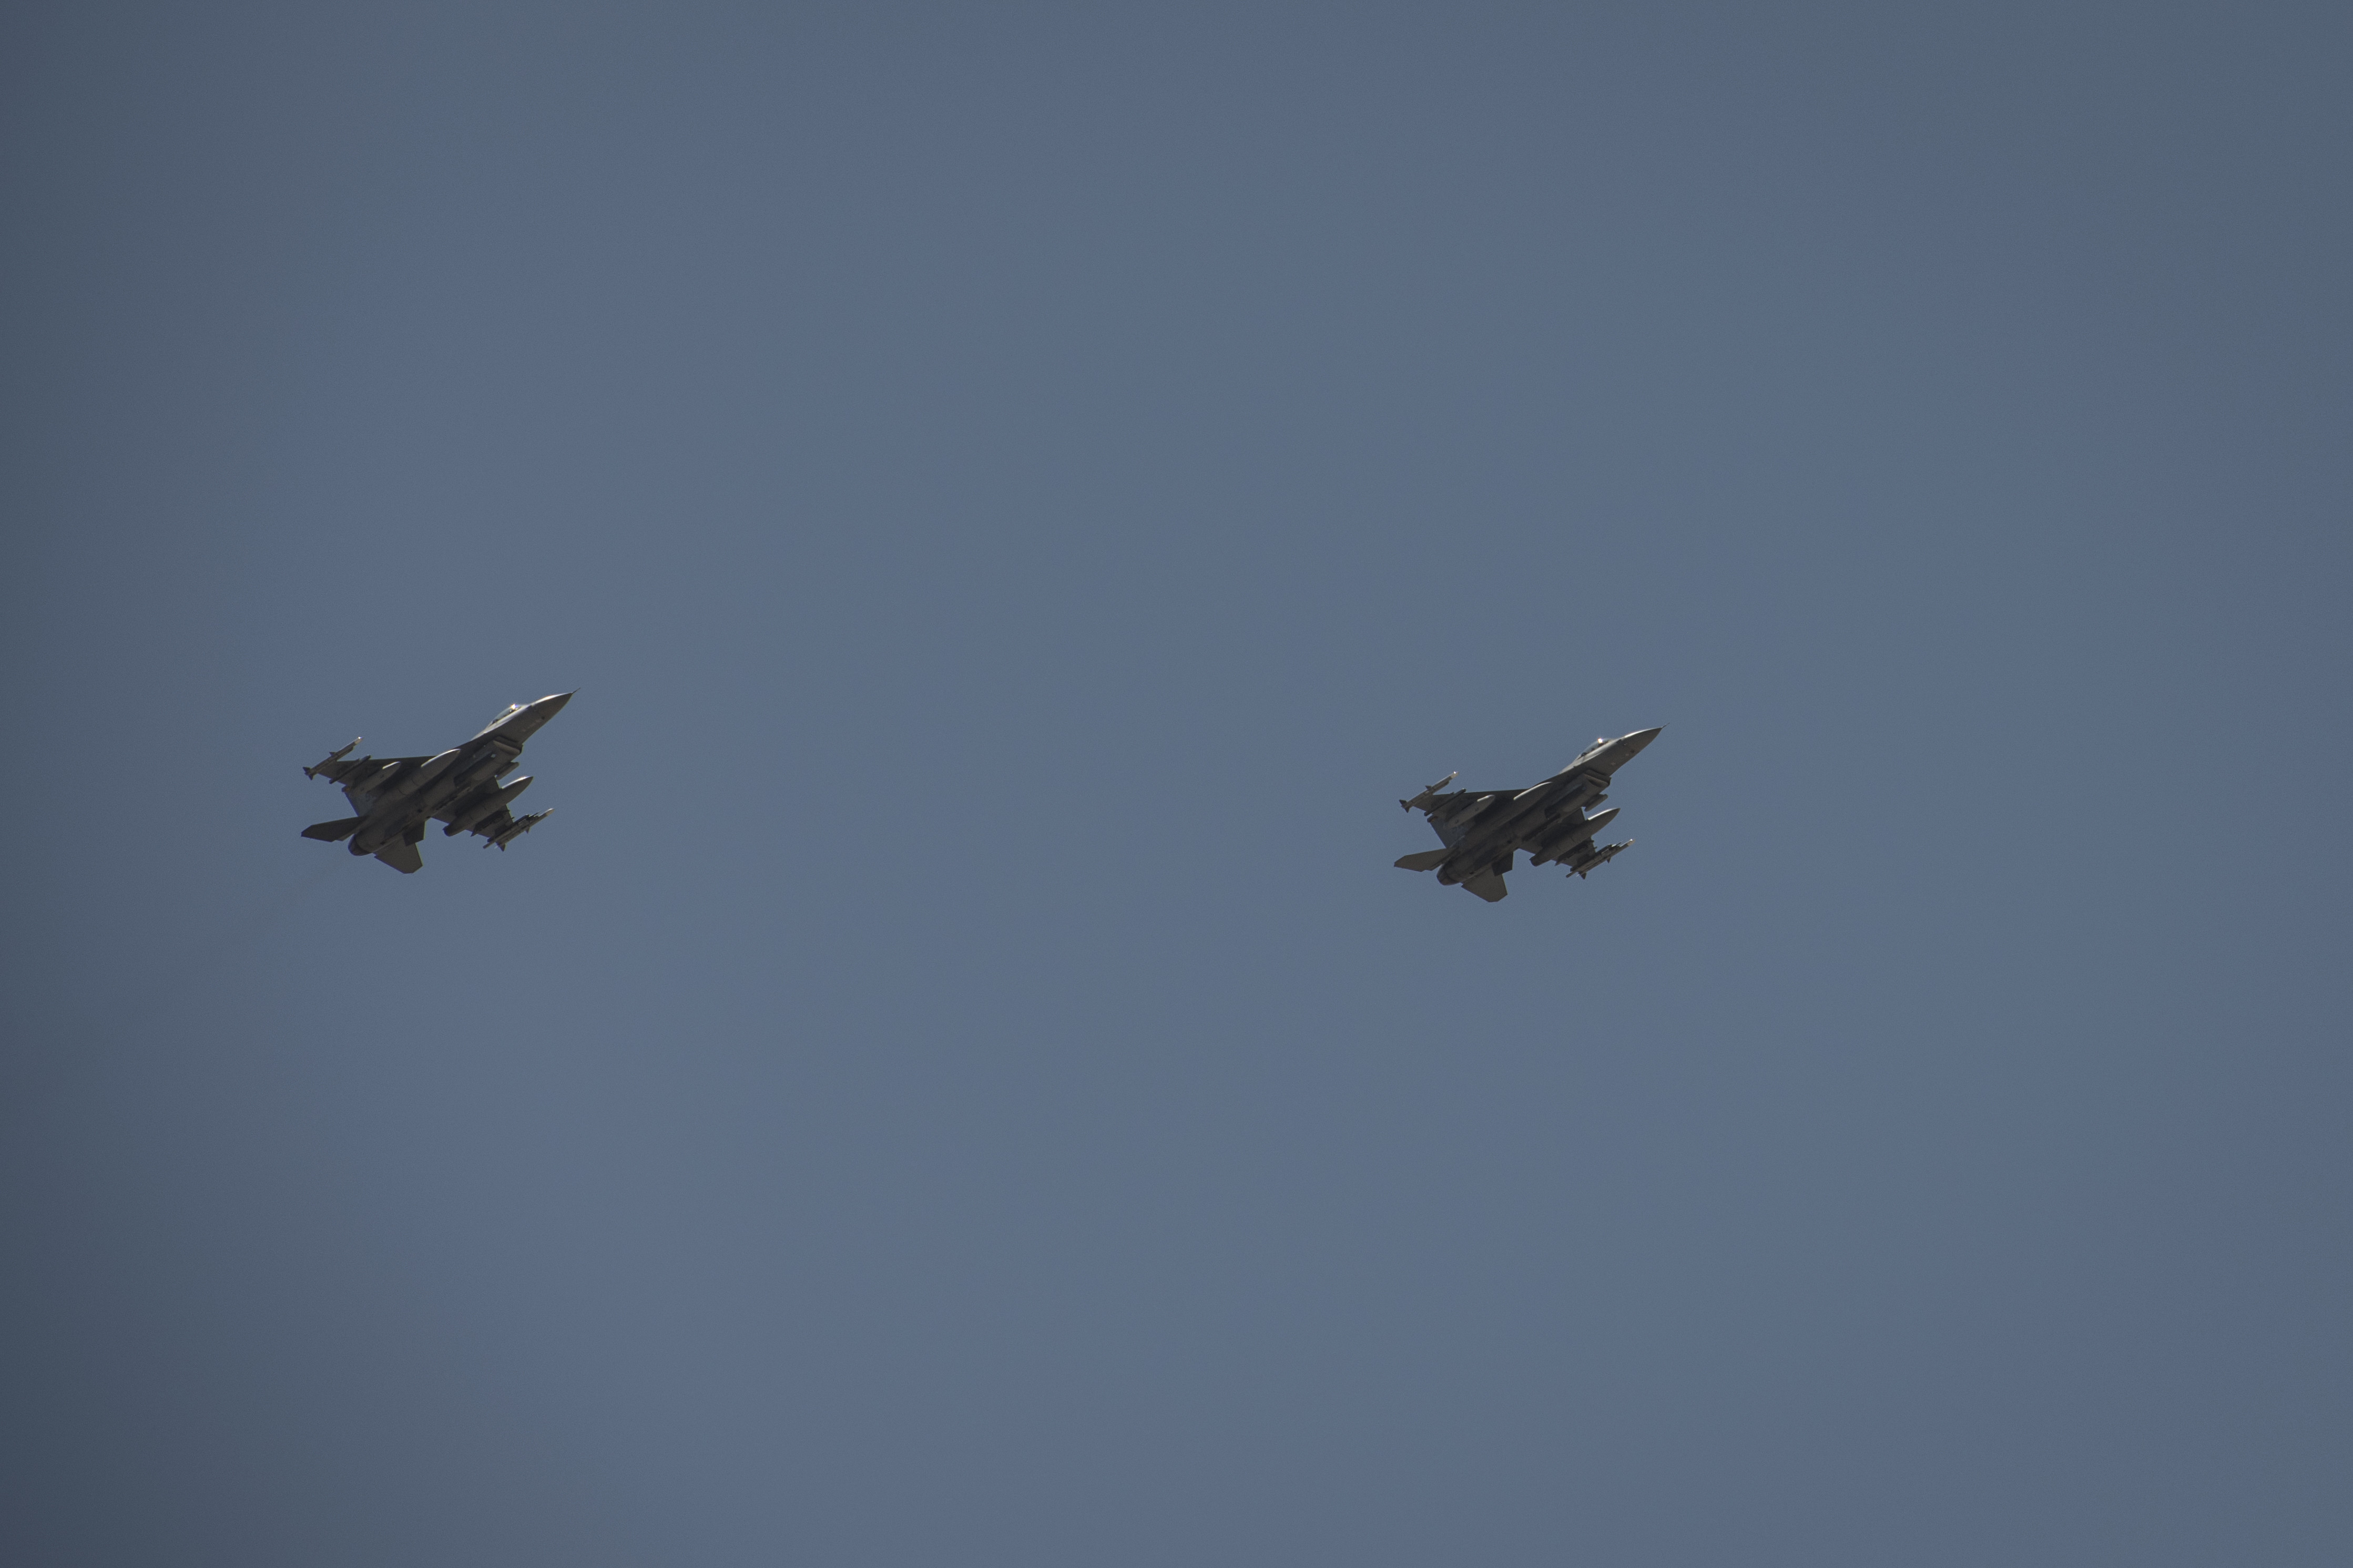 Пара F-16  Viper  79-й экспедиционной эскадрильи ВВС США над неназываемым районом в зоне ответственности Центрального командования США  (в испытаниях Viper  в условиях реальной боевой обстановки принимали участие 6 машин), фото сделано 14 февраля 2020 года